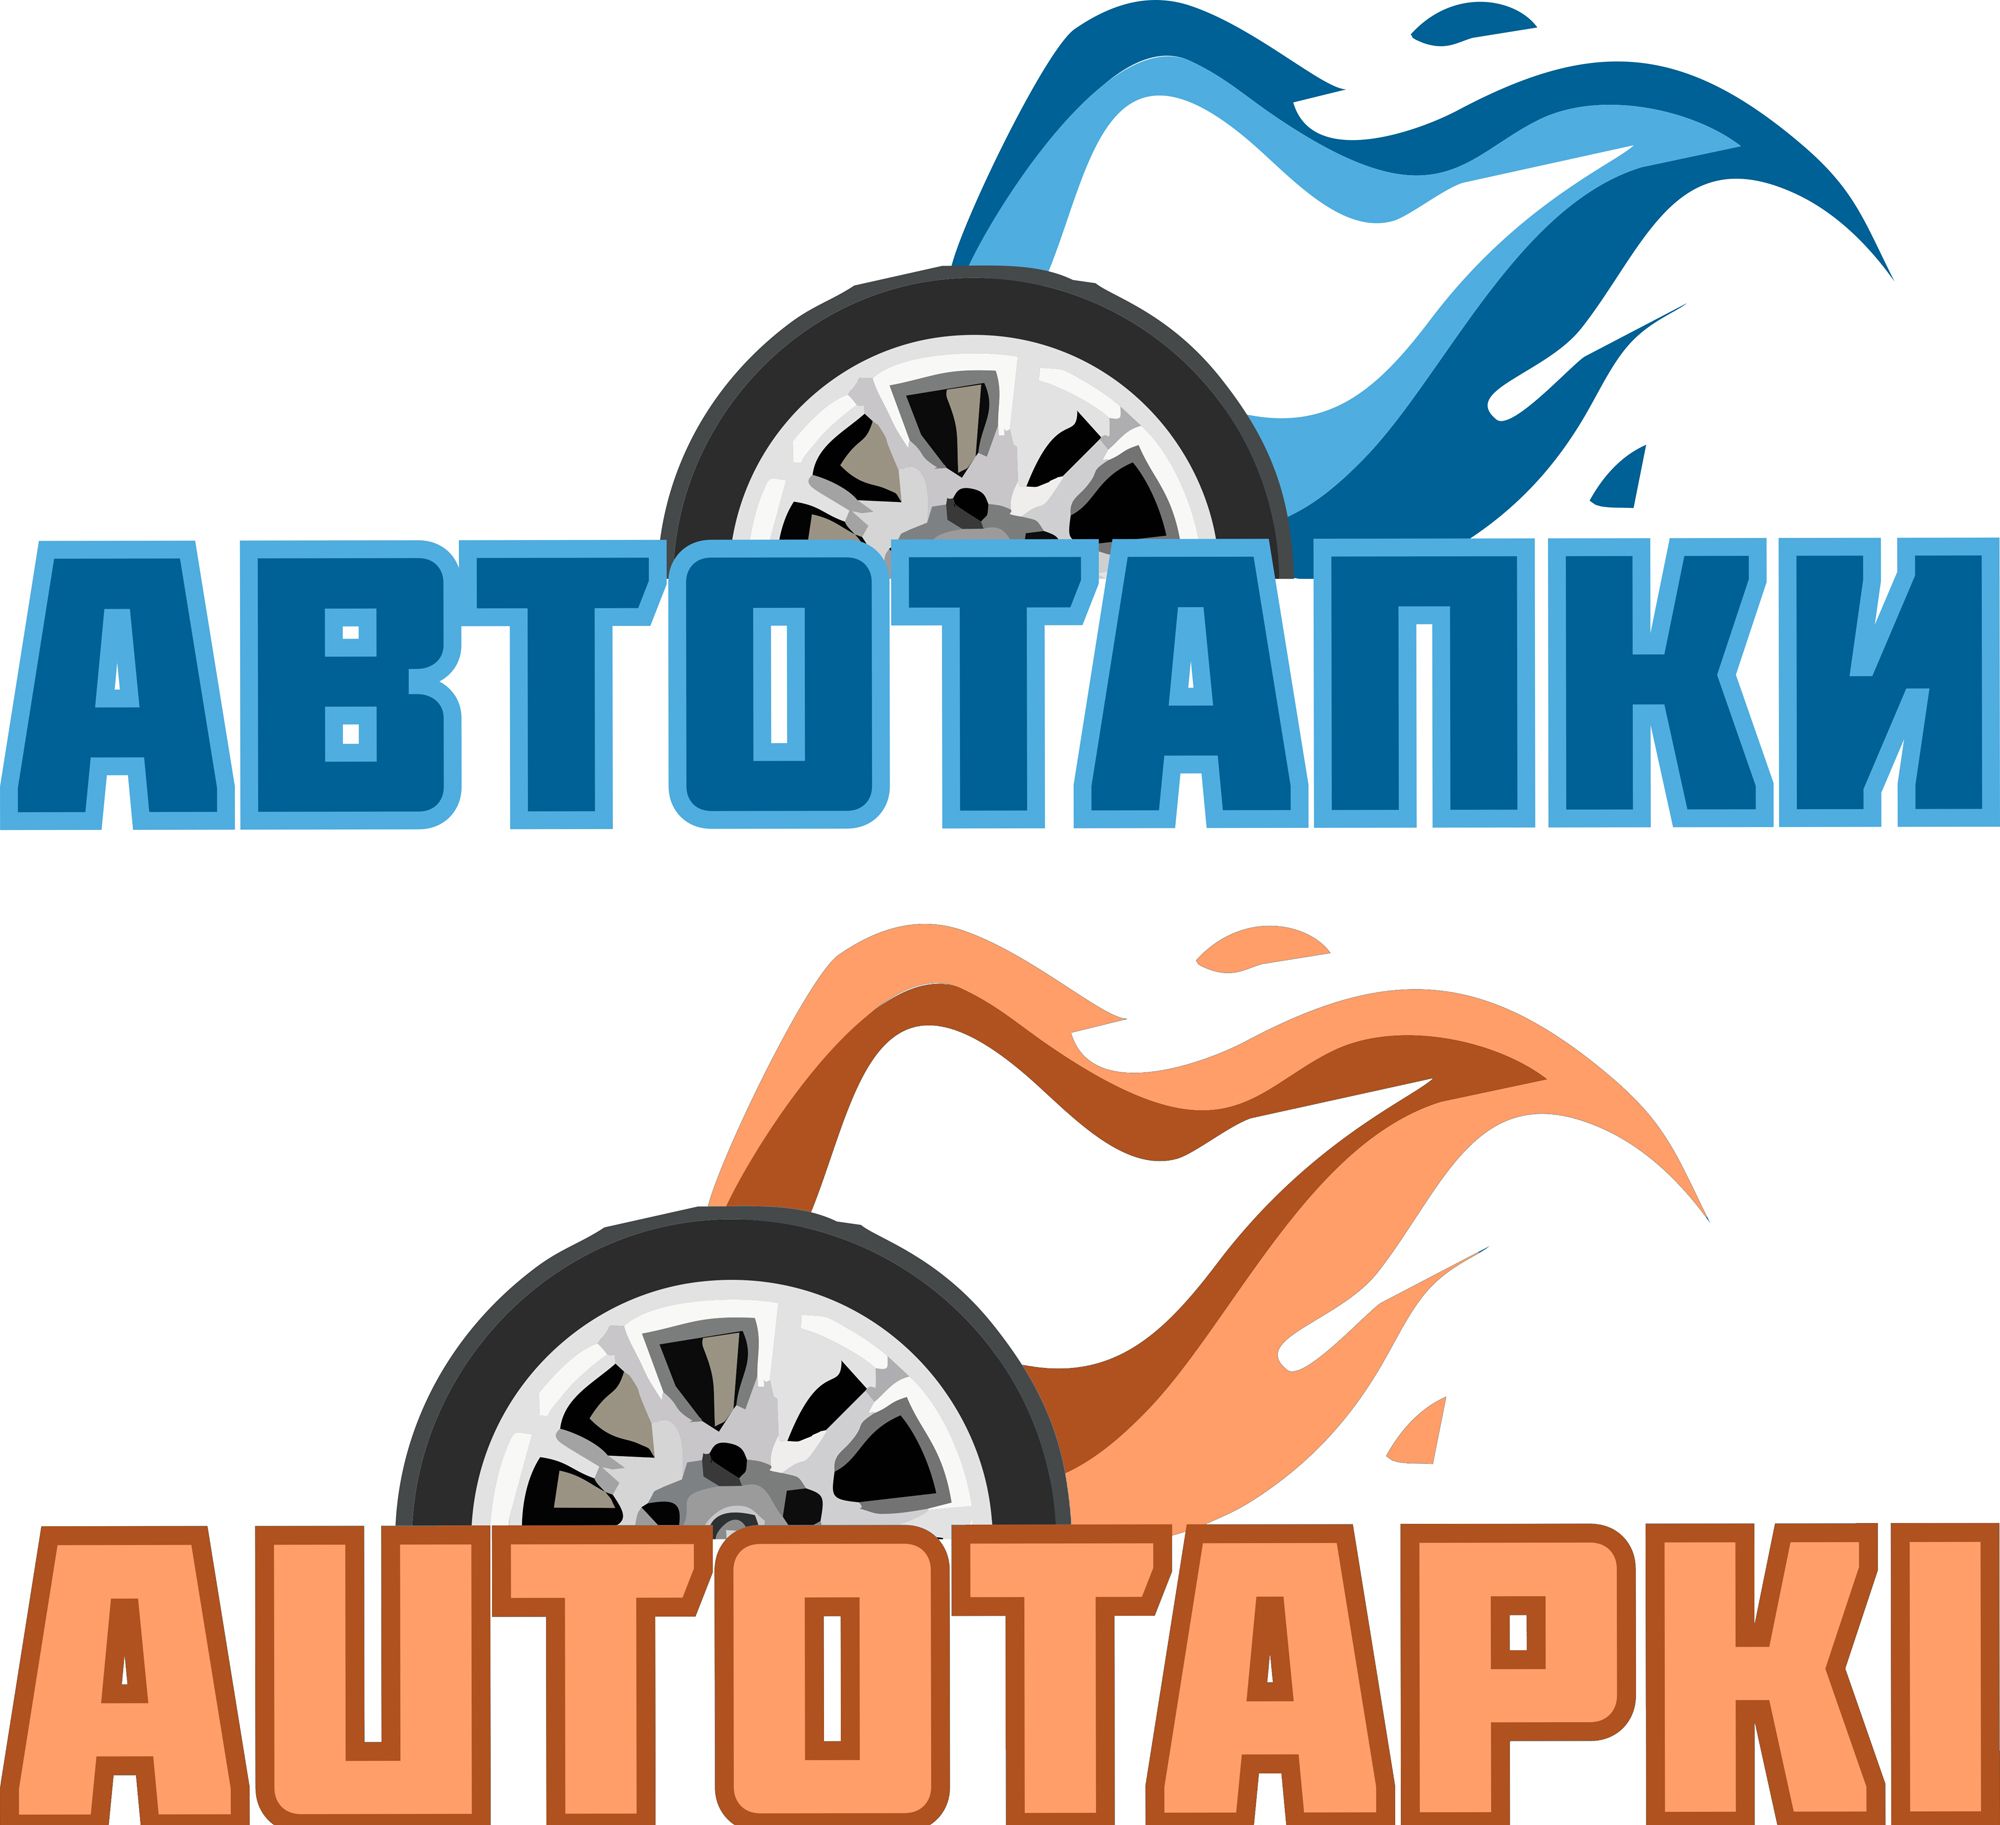 Логотип для магазина авто и мото шин и дисков - дизайнер ov07